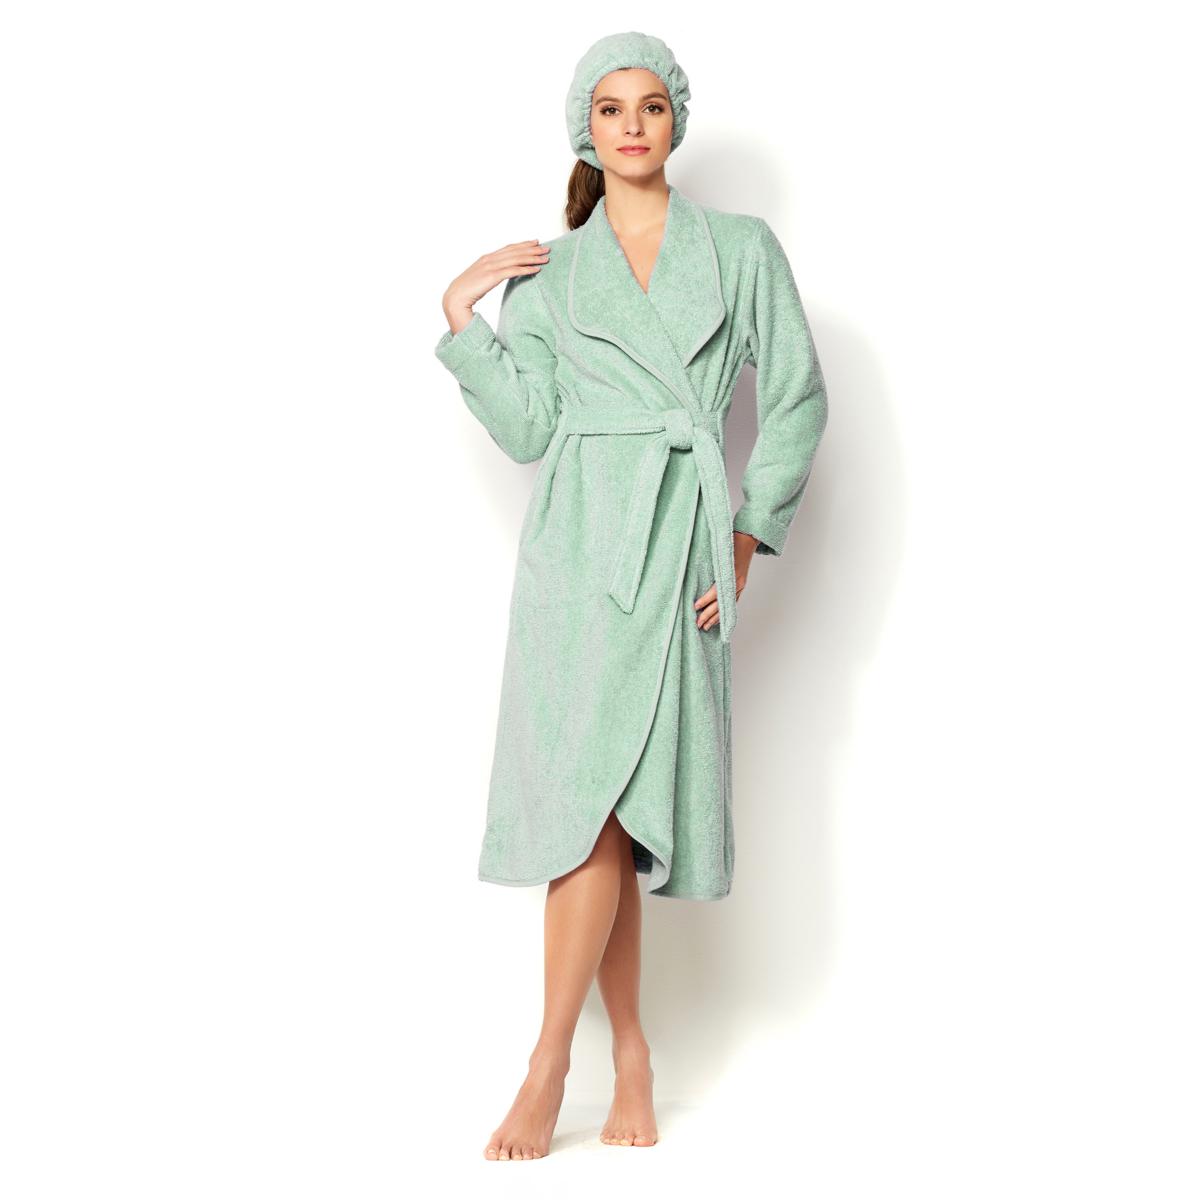 Jollein bathrobe nougat 1 yr+ – PSiloveyou